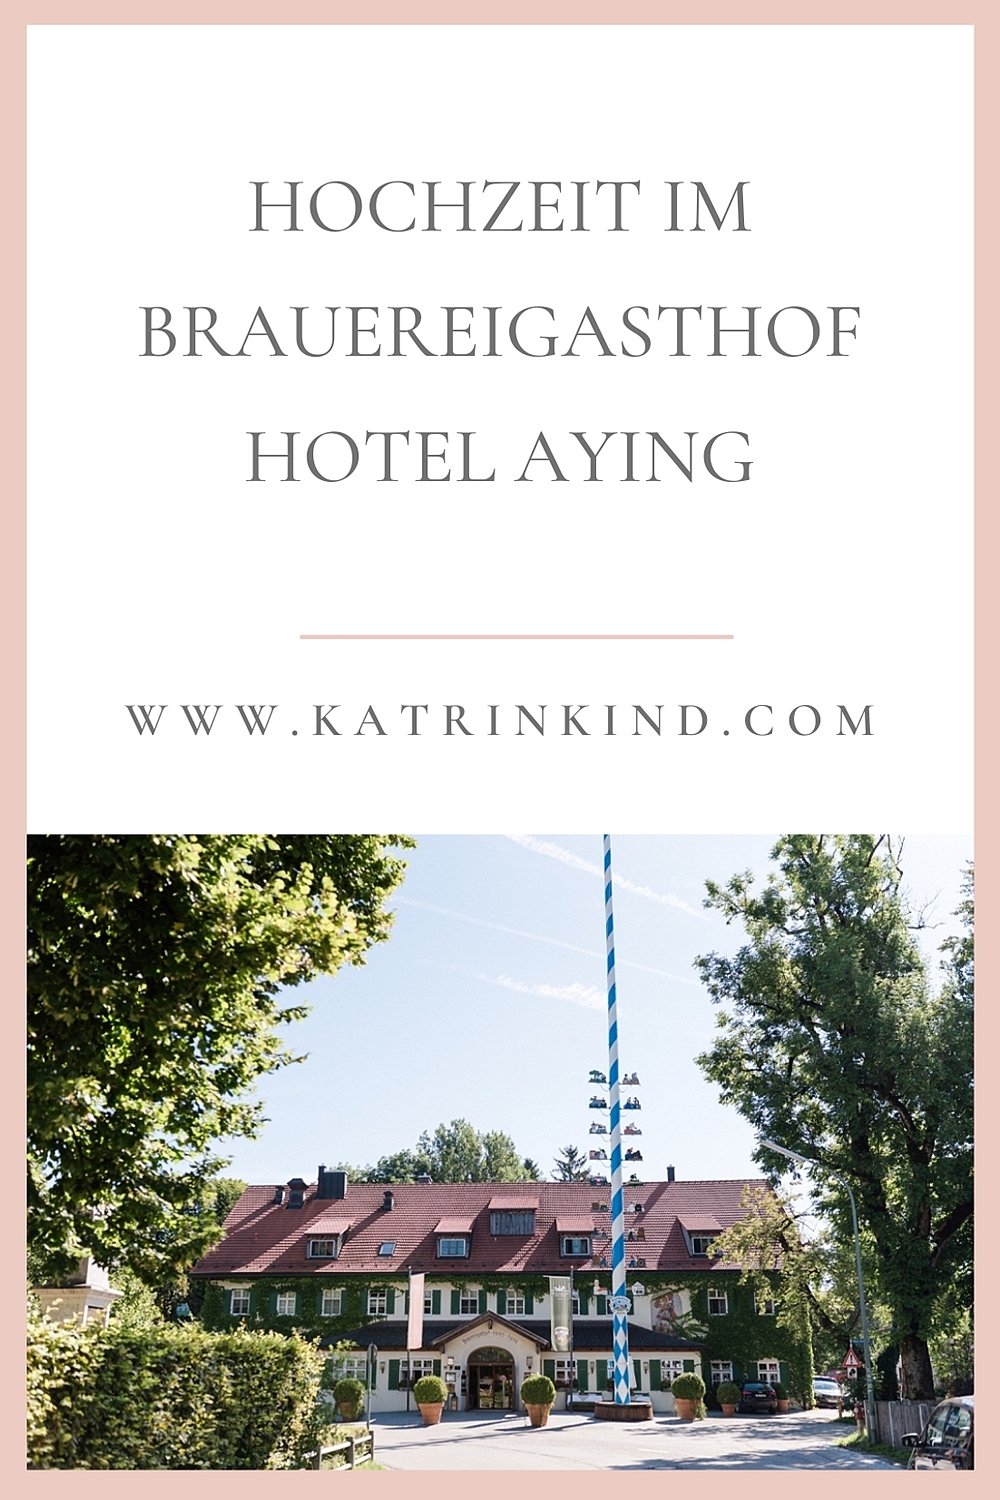 Brauereigasthof Hotel Aying Hochzeit